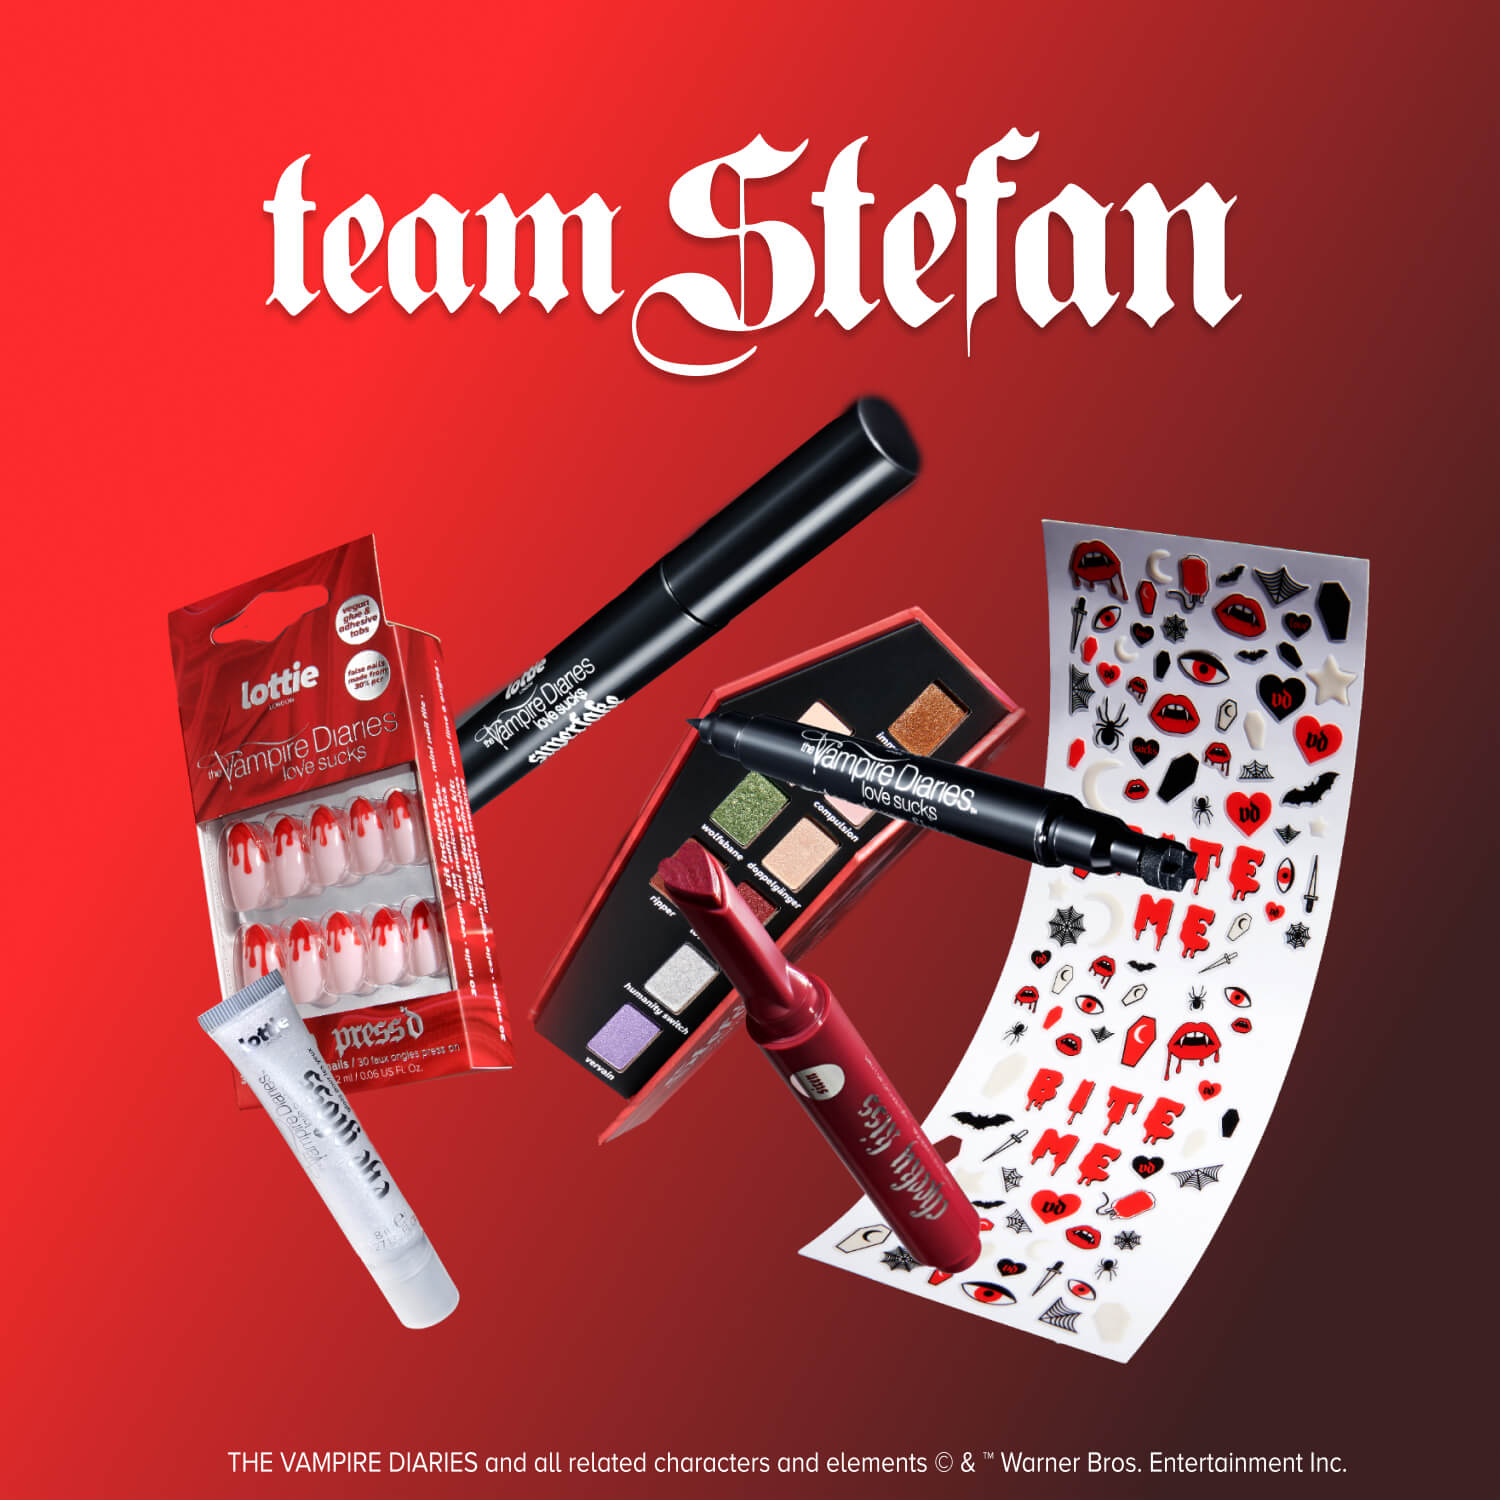 The Vampire Diaries x team Stefan bundle